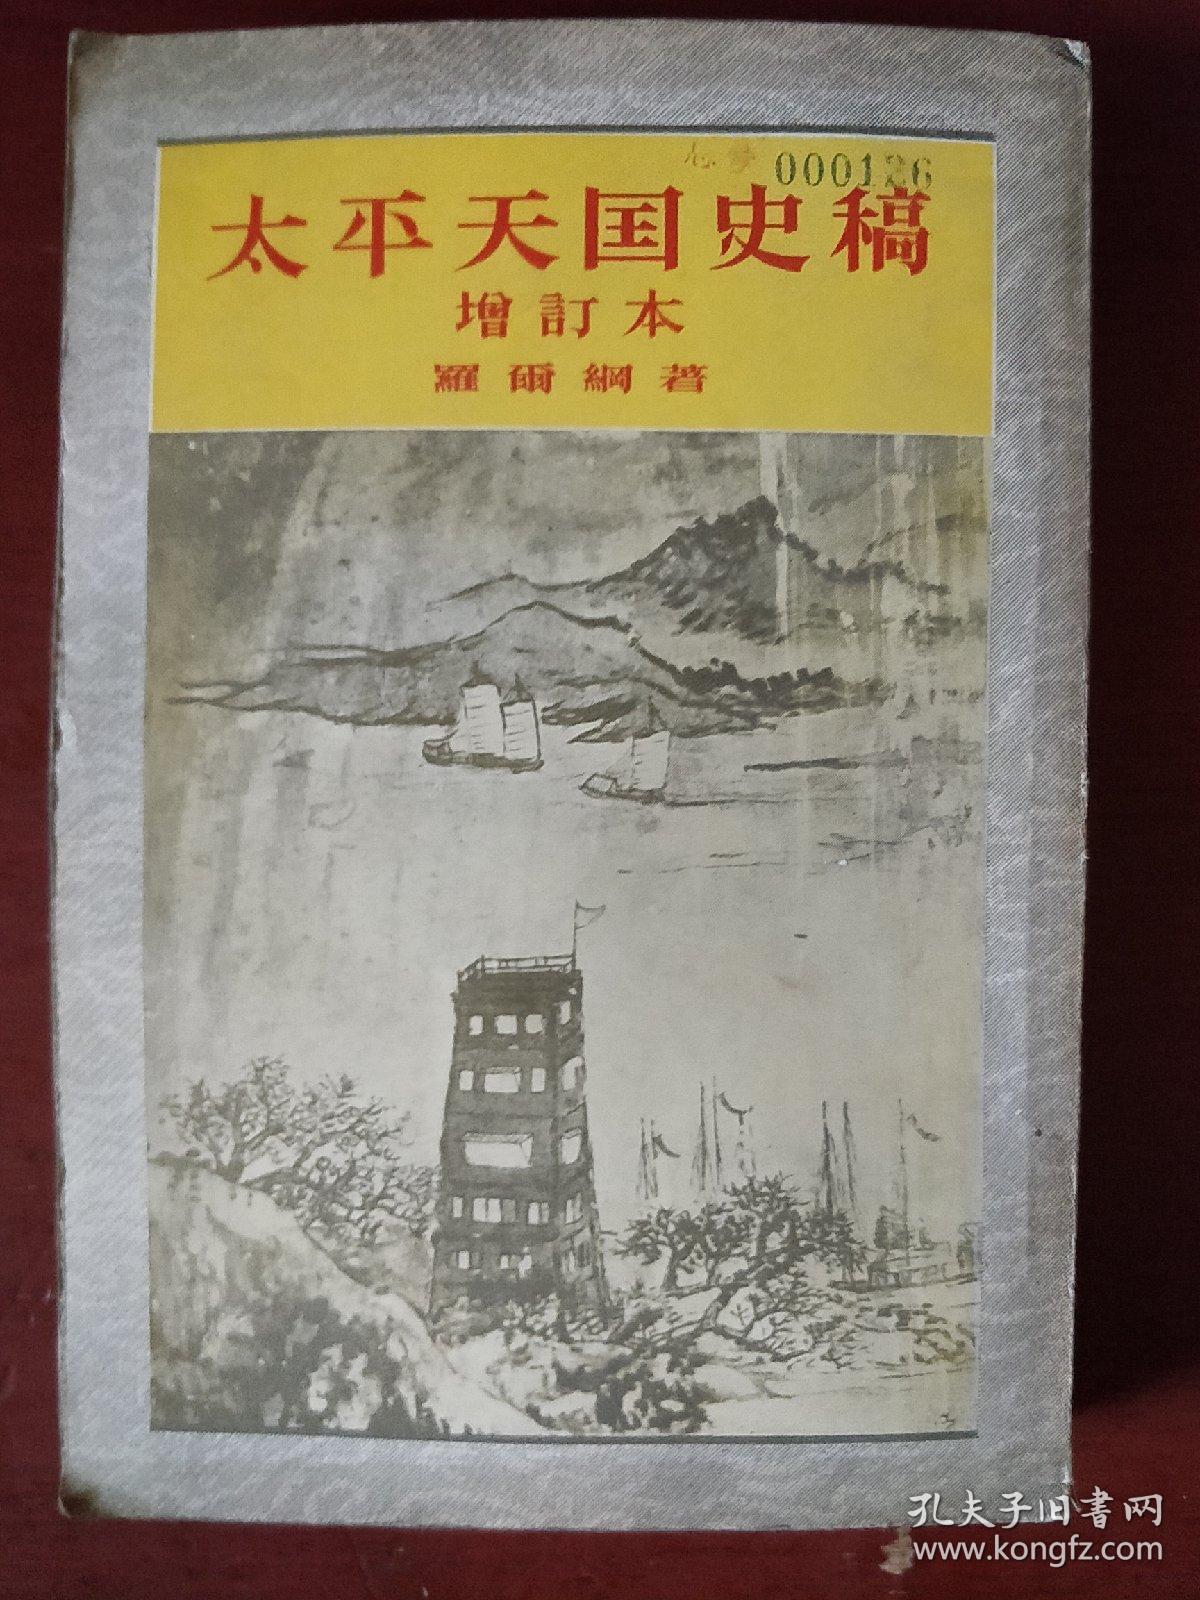 《太平天国史稿》增订本 罗尔钢 著 竖版繁体  中华书局 1957年1版1印 馆藏 书品如图